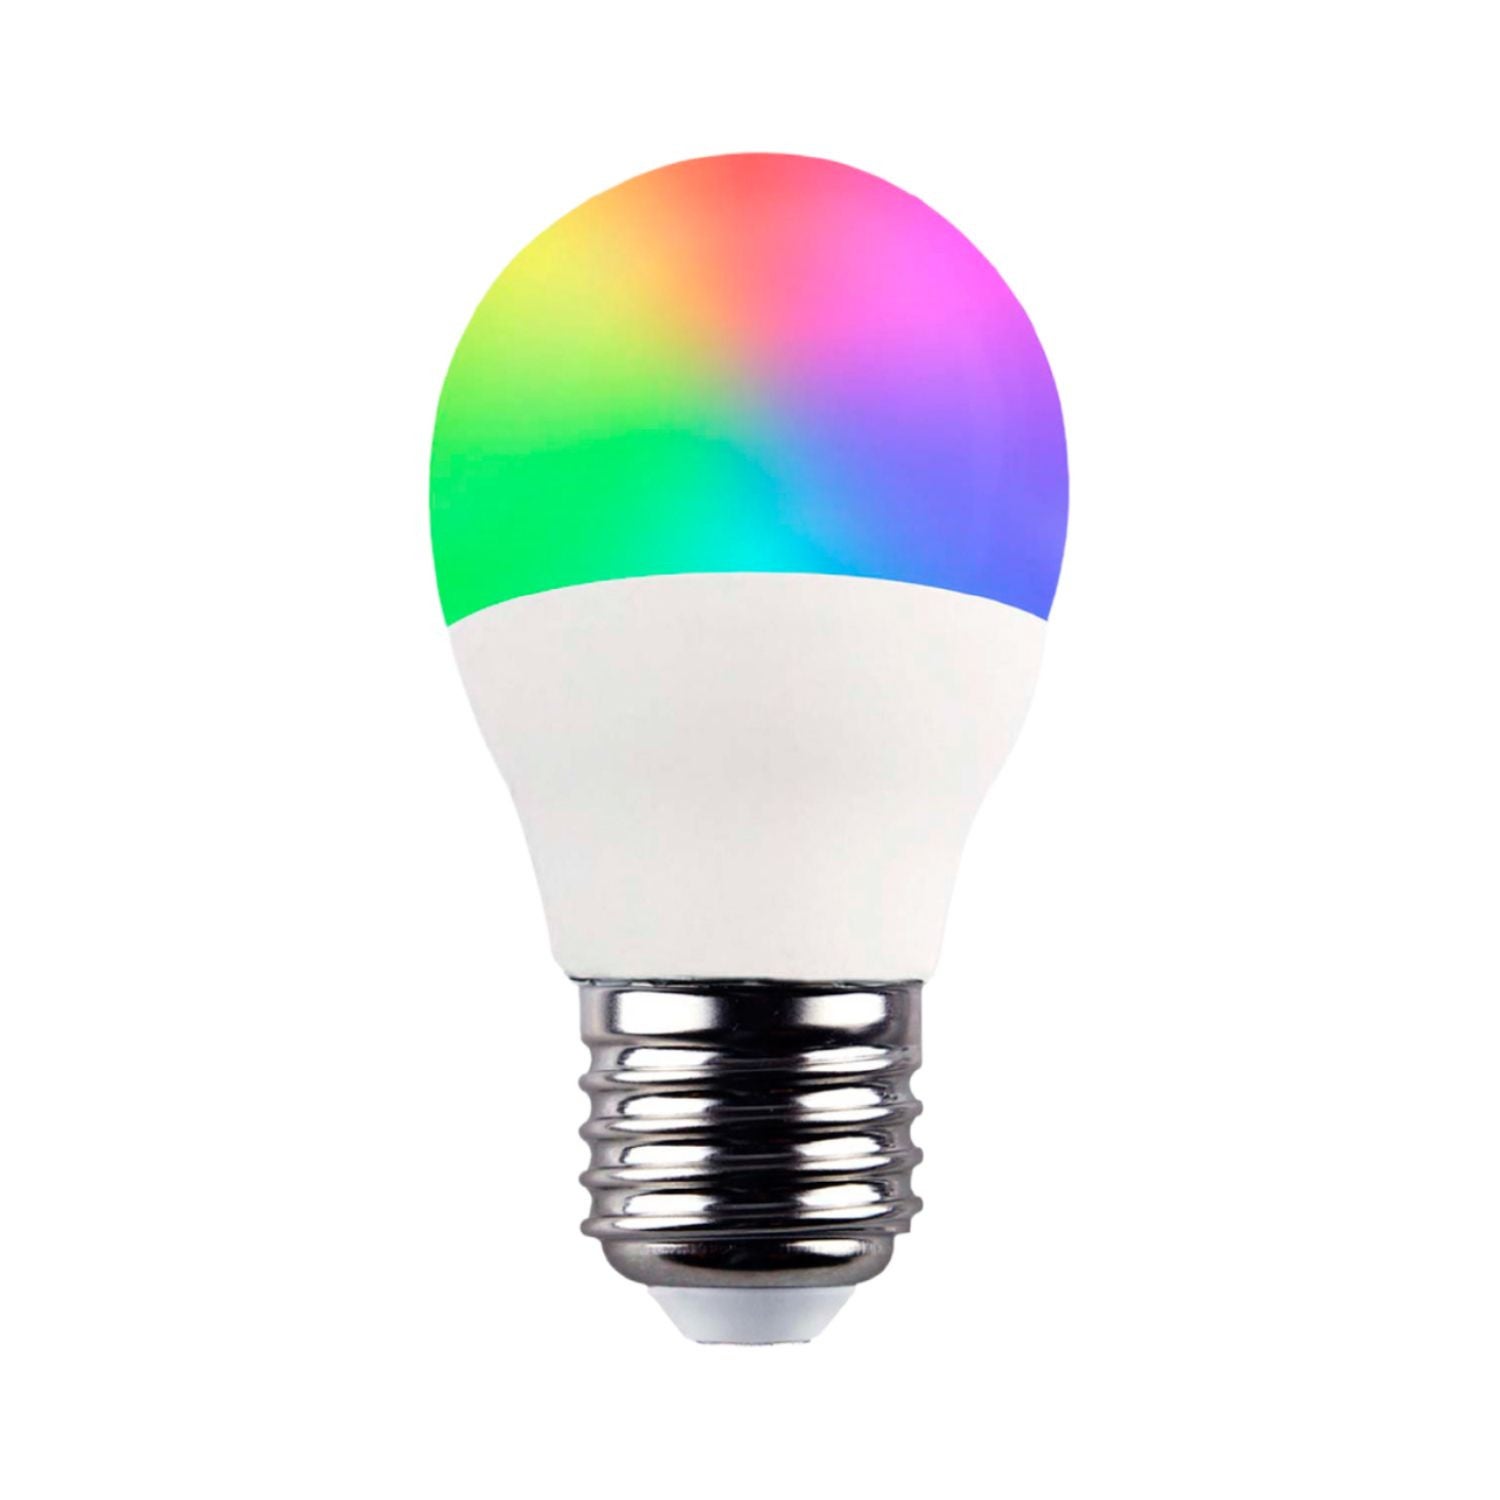 Ampoule LED connectée E27 RGB et dimmable via application mobile